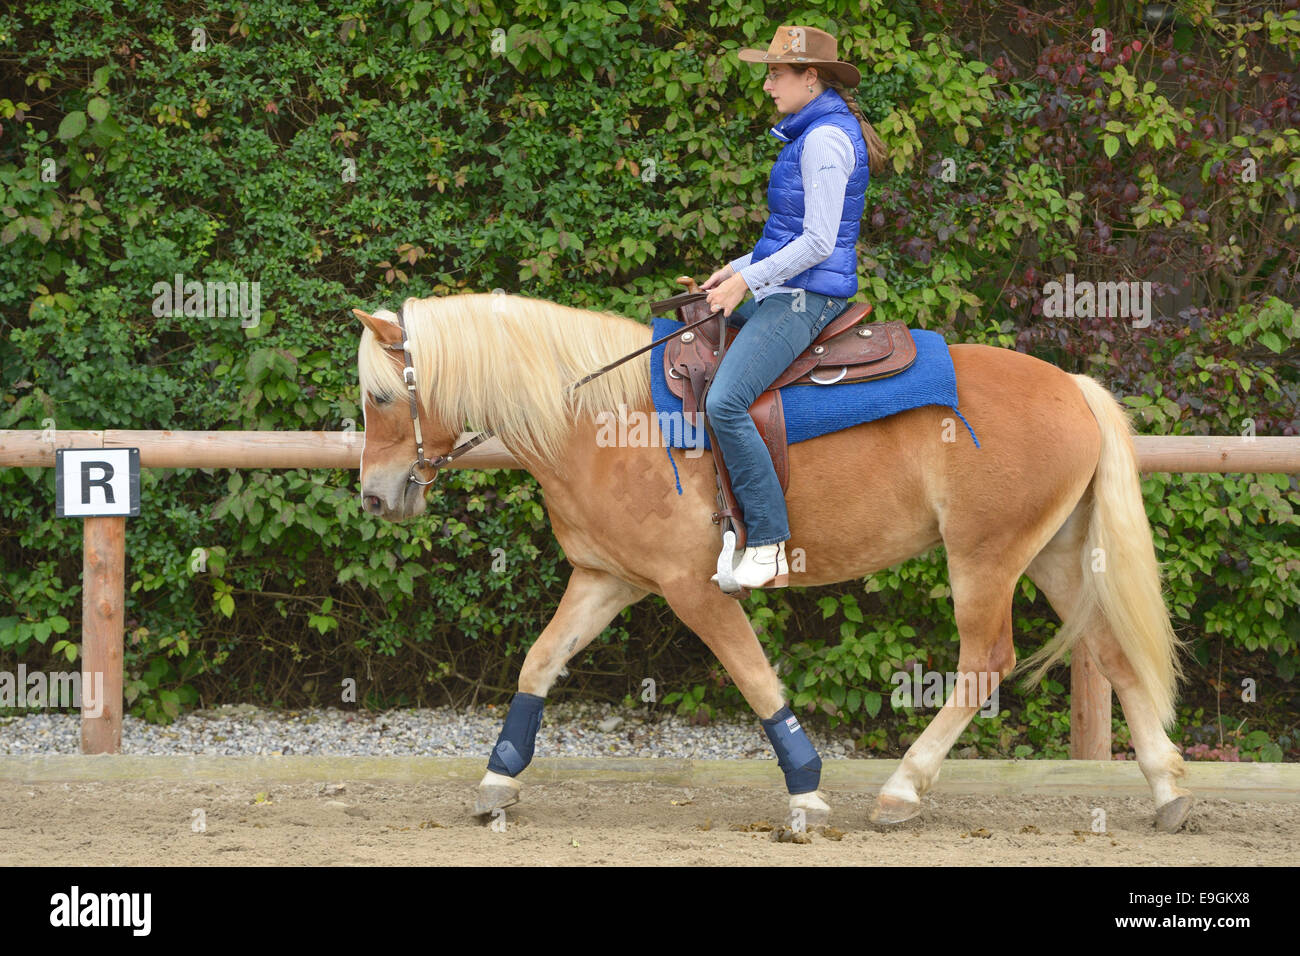 Rider on back of Haflinger horse trotting Stock Photo